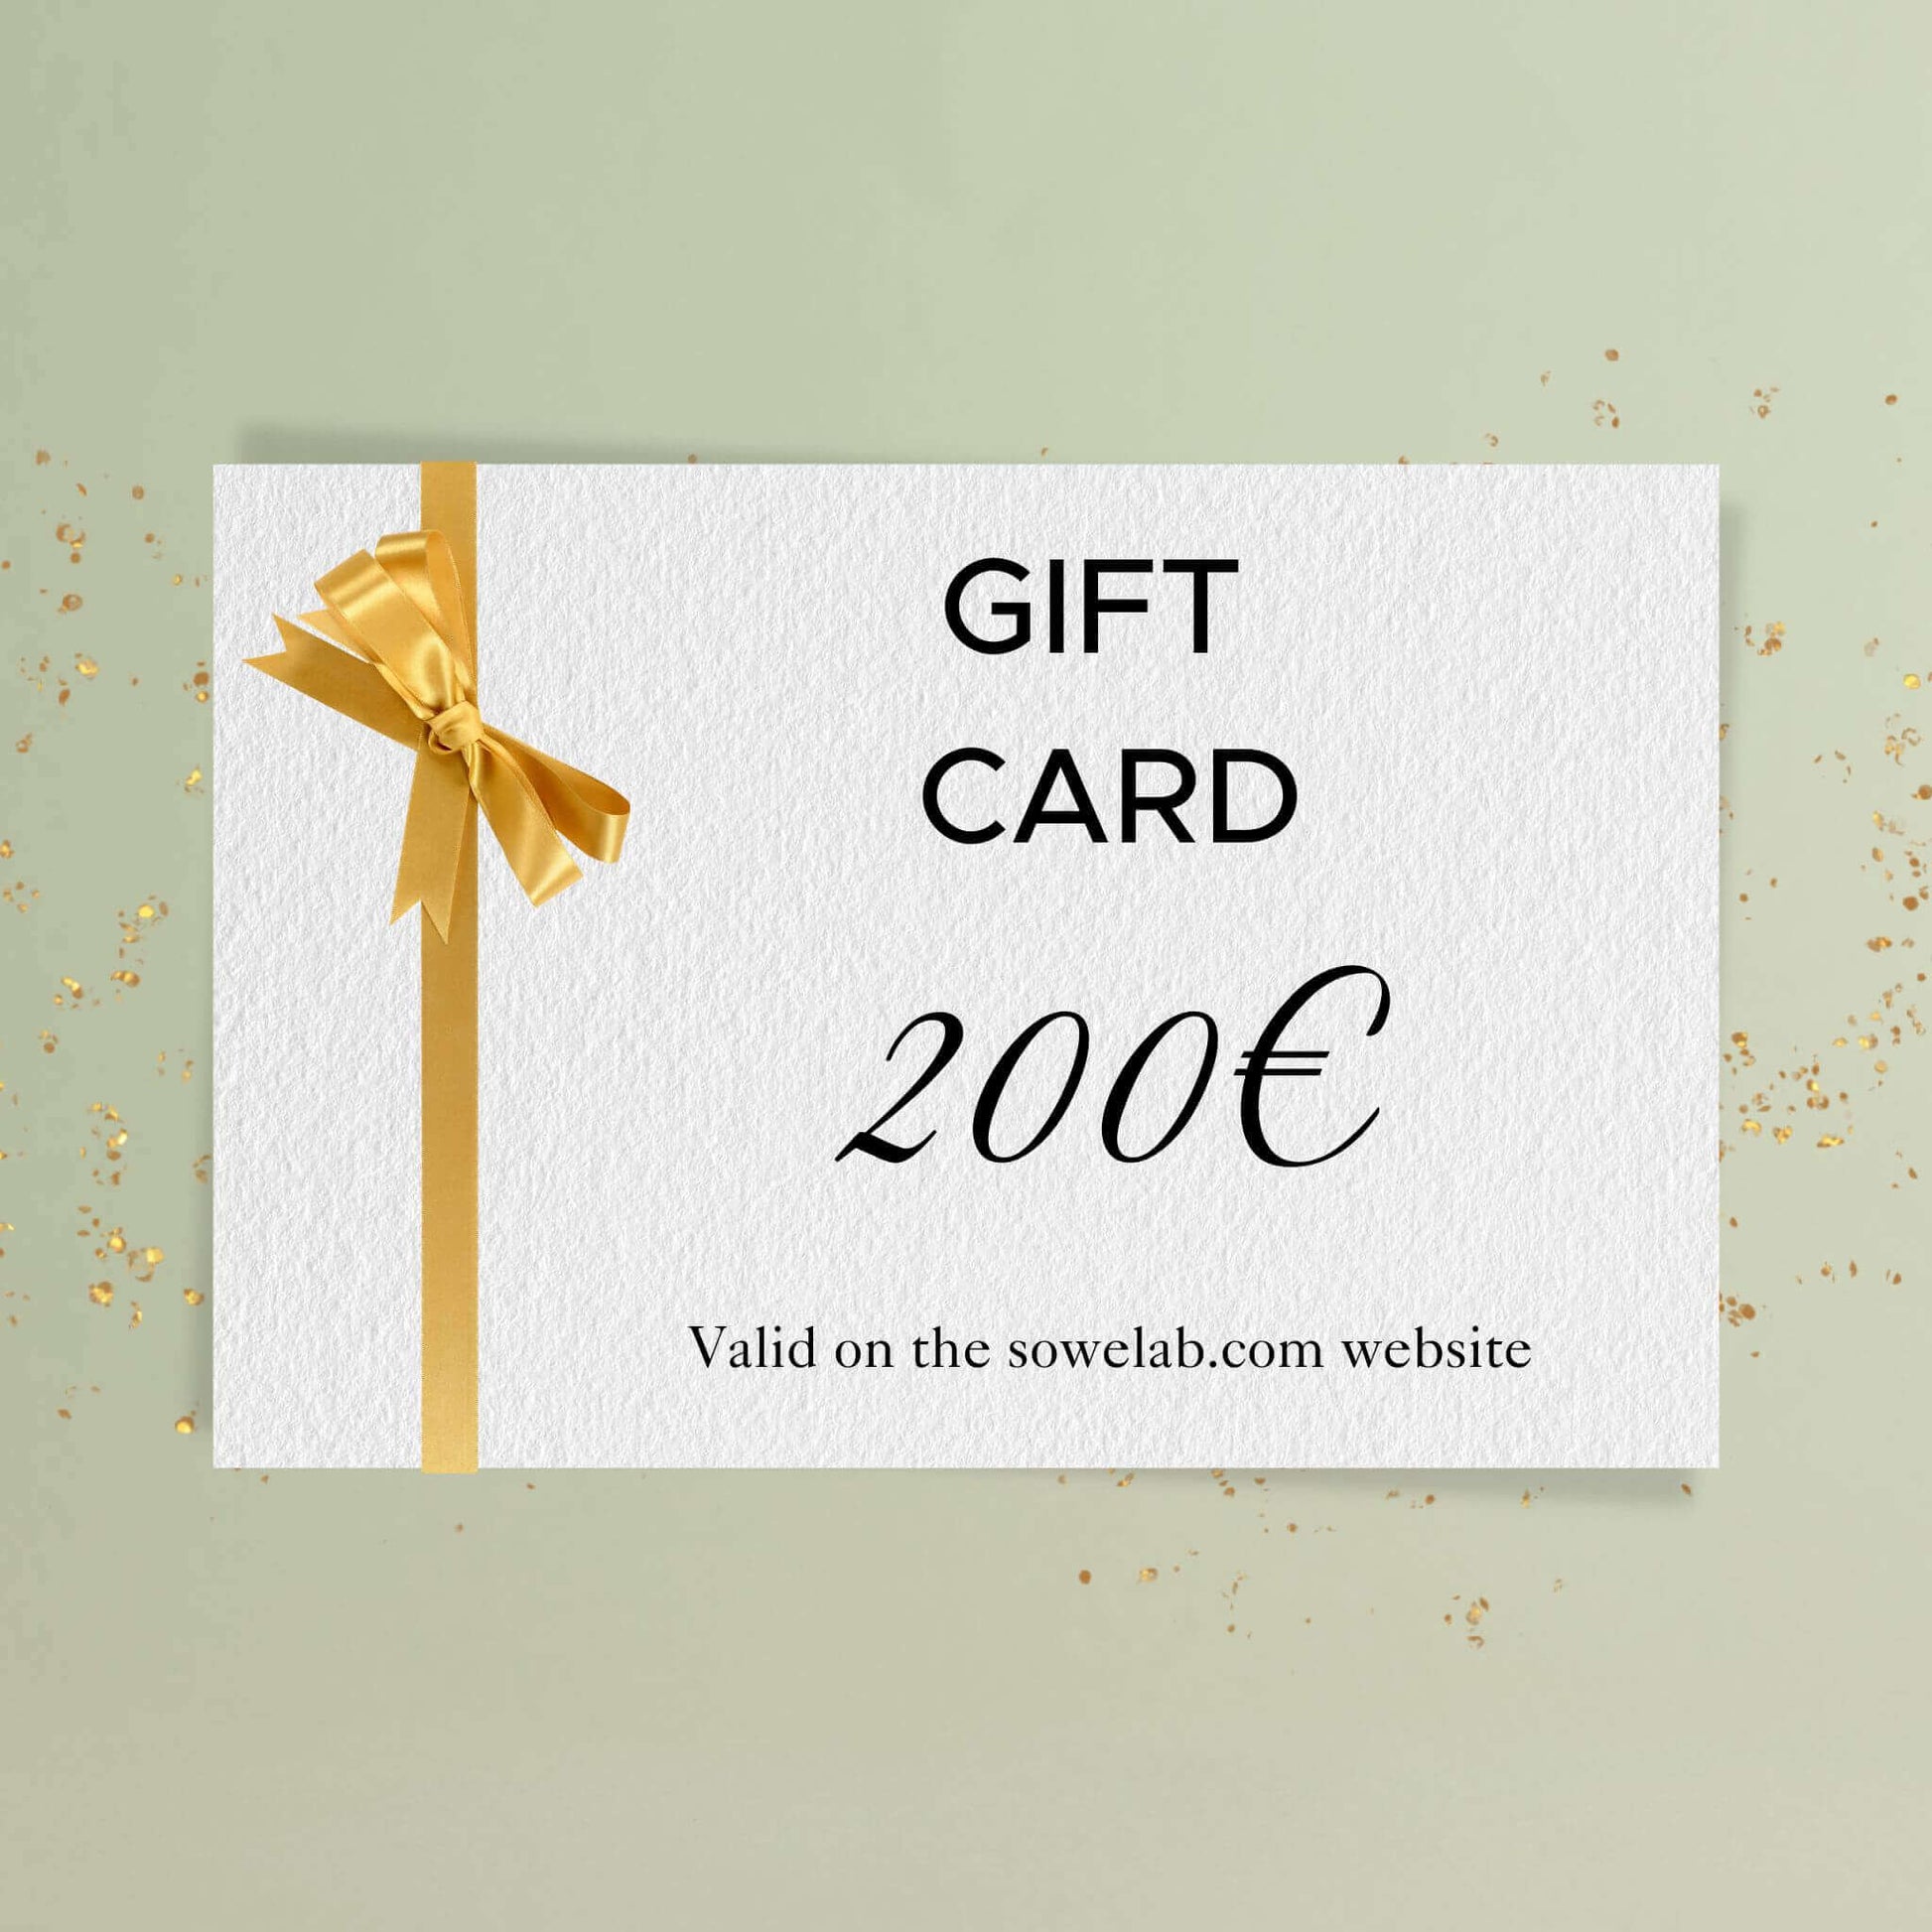 Carte cadeau - Gift card - Tarjeta regalo - Cartão-presente - 200 euros